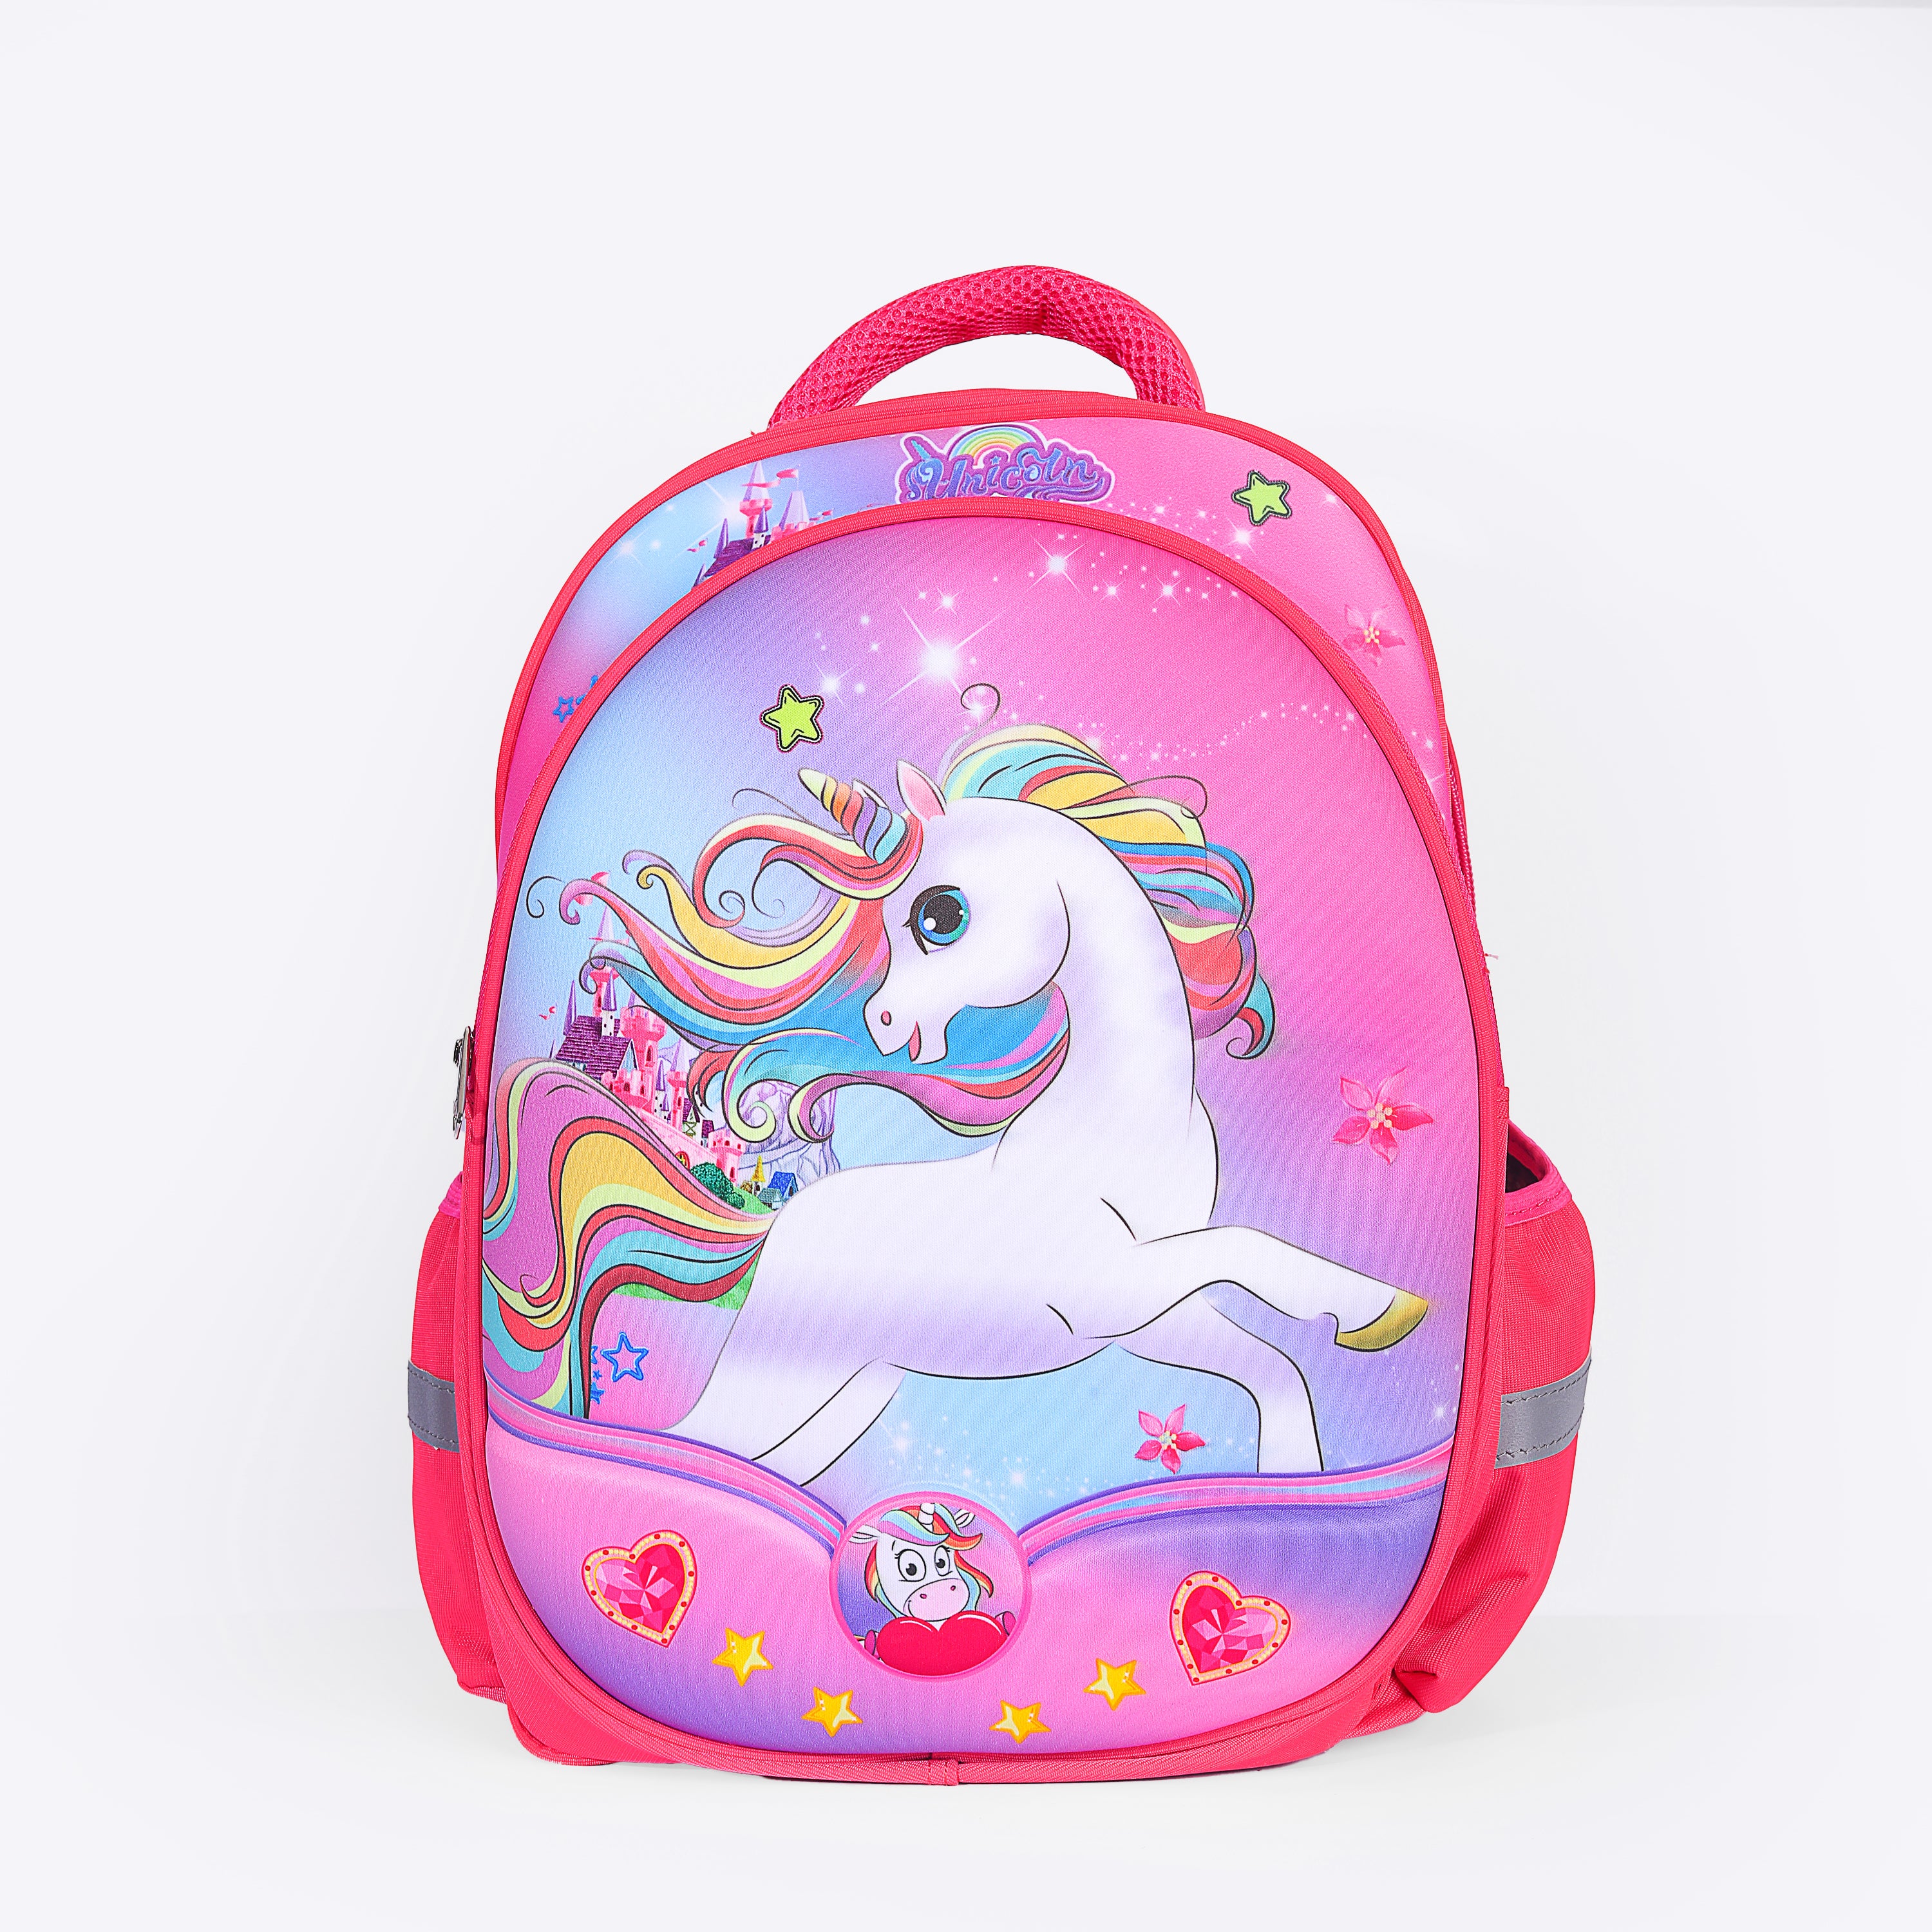 Unicorn Bag For Girls